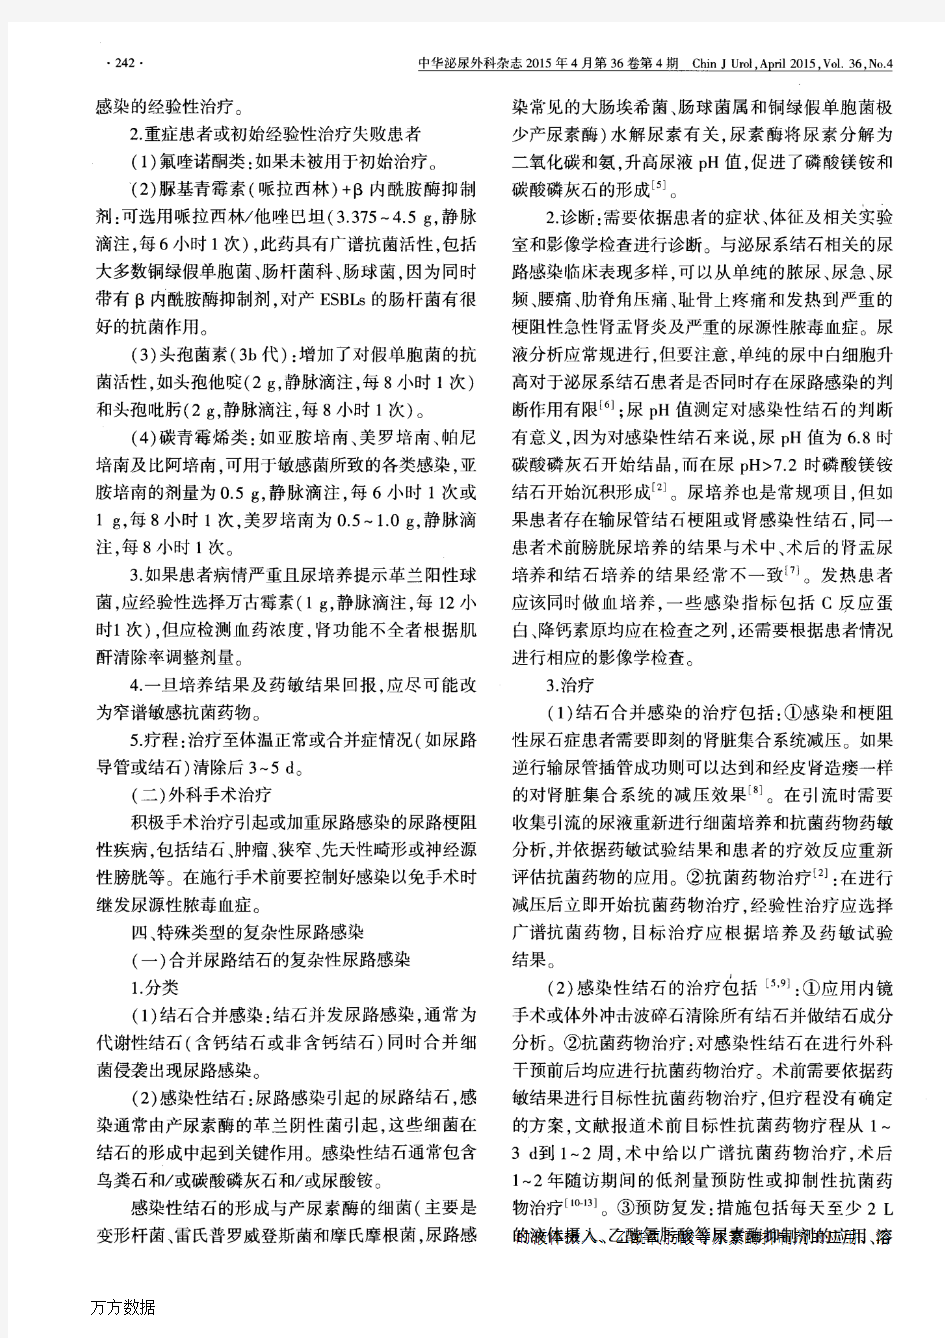 尿路感染诊断与治疗中国专家共识(2015版)——复杂性尿路感染